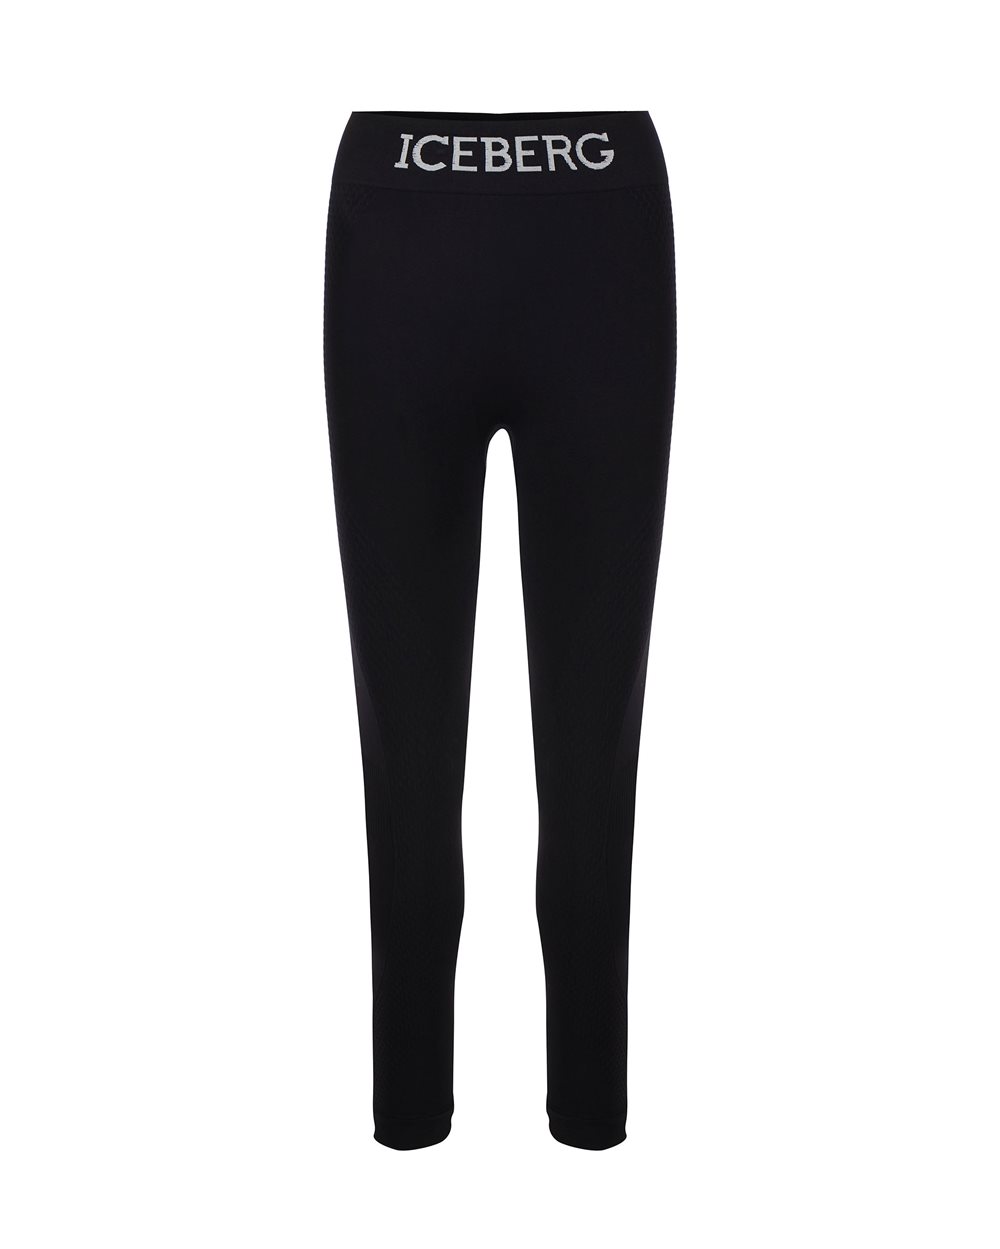 Logo leggings - Carryover | Iceberg - Official Website